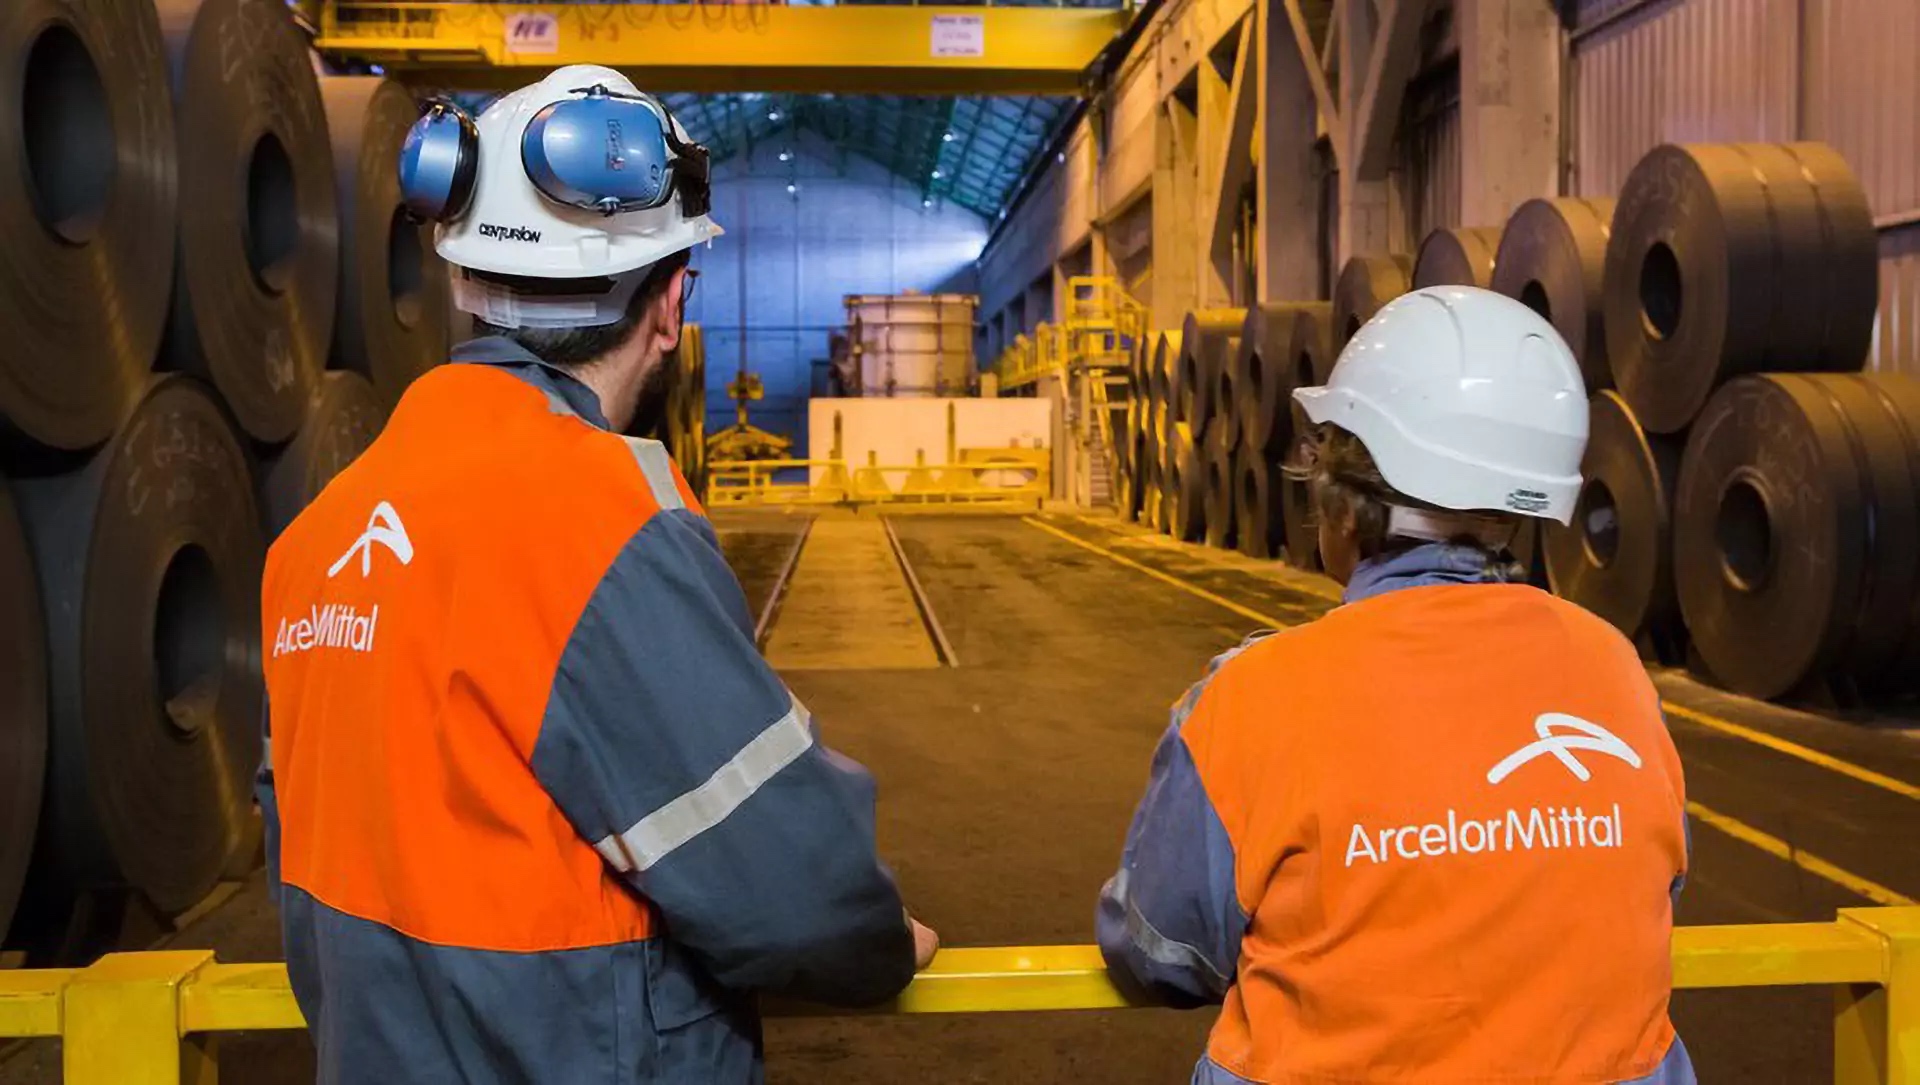 تزعم مصادر السوق أن شركة ArcelorMittal بدأت في إبلاغ مشتريها بخطتها لزيادة مستويات العرض لطلبات يناير إلى 680 يورو بالطن في شمال أوروبا لـ HRC.